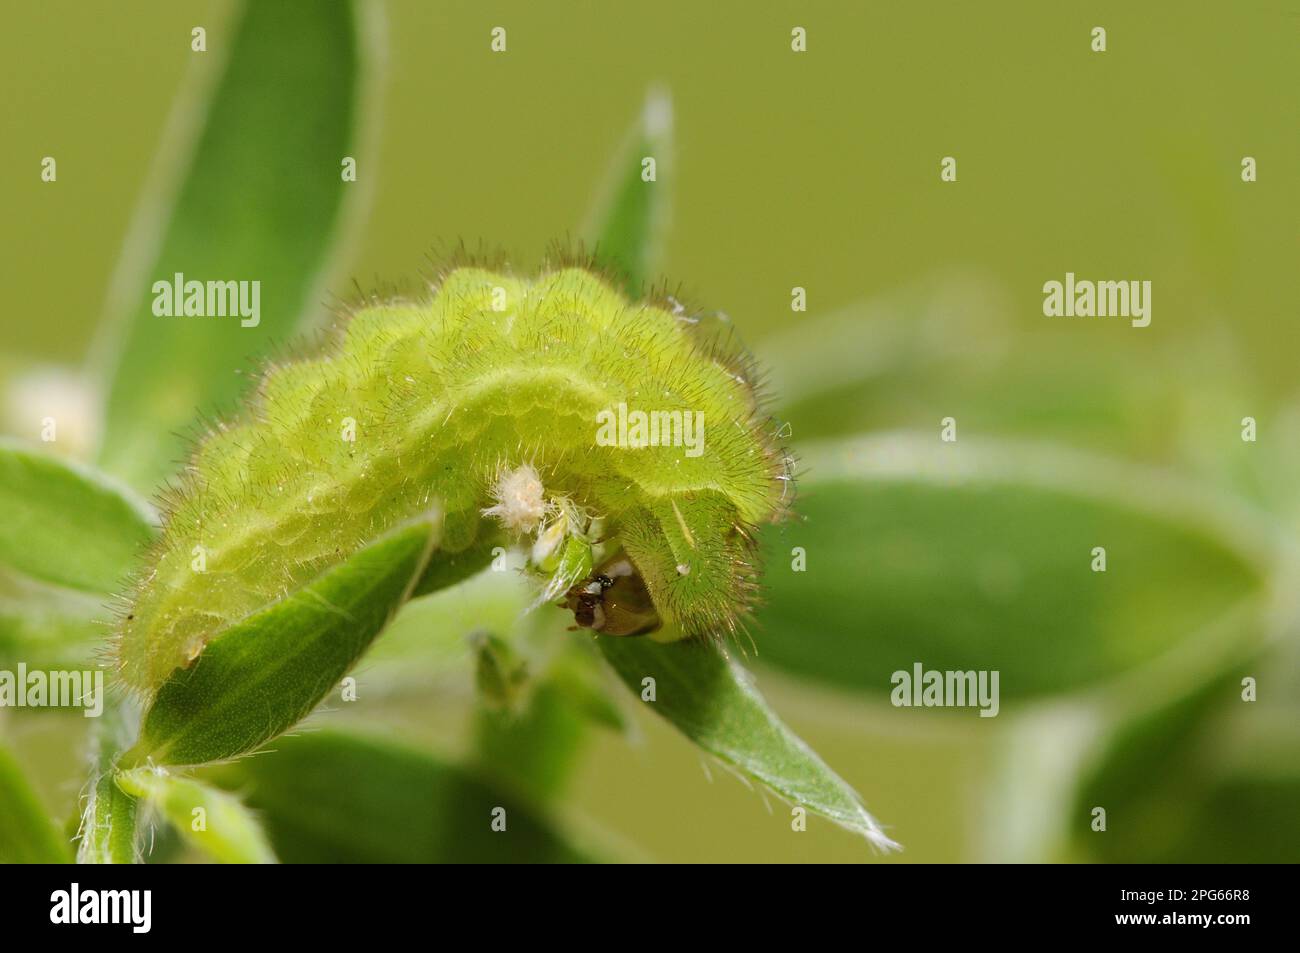 Queue de cheveux verte (Callophrys rubi), autres animaux, insectes, papillons, animaux, Green strie Hairlarva, se nourrissant sur le gorse Oxfordshire, Angleterre Banque D'Images